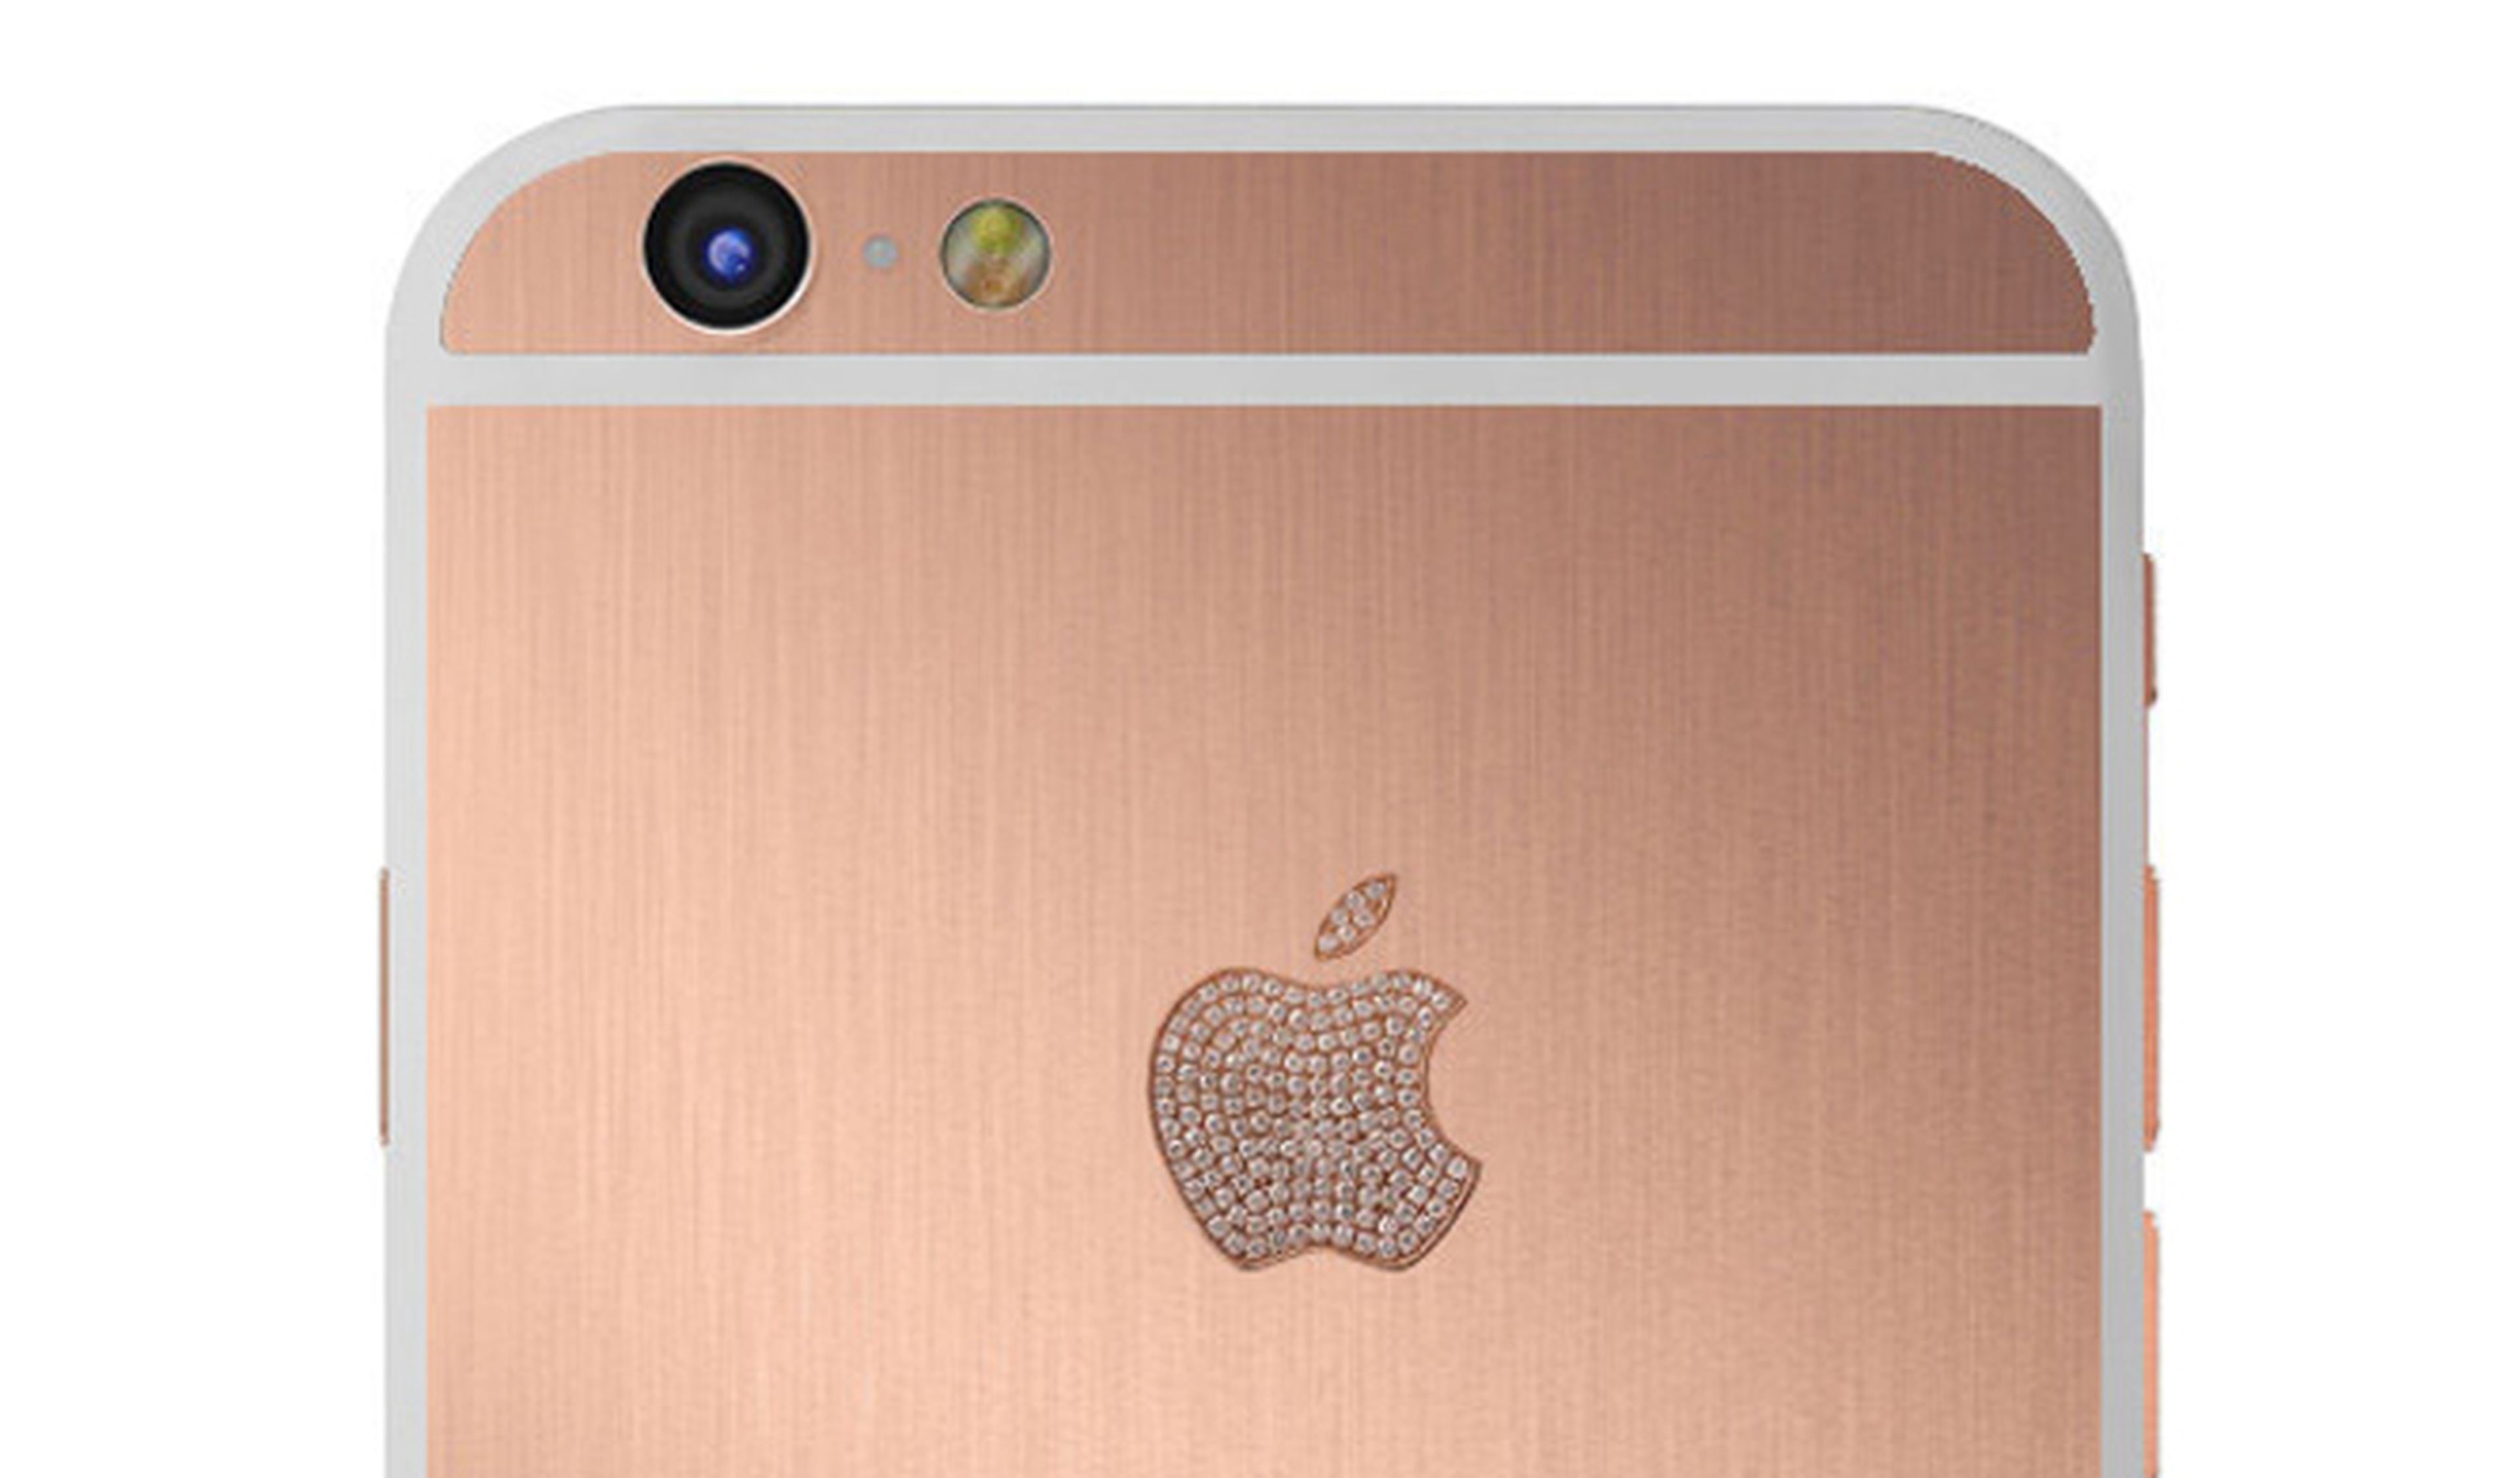 ¿Cuánto cuesta este iPhone 6 de oro rosa?